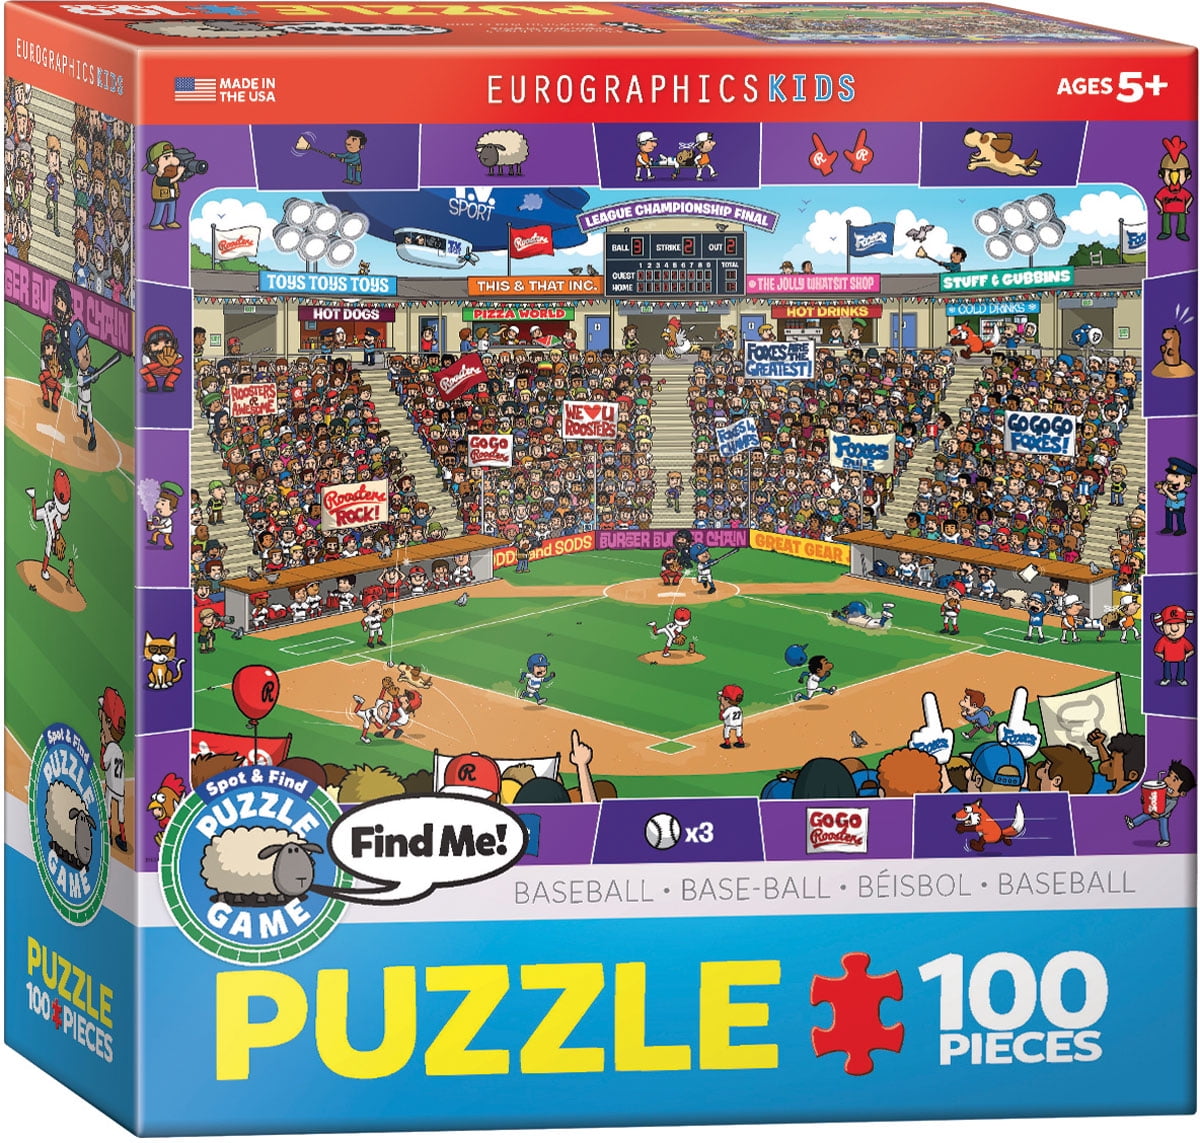 100 Piece Puzzle Crazy Aquarium Spot Find Multicolor Jigsaw Kids Game 